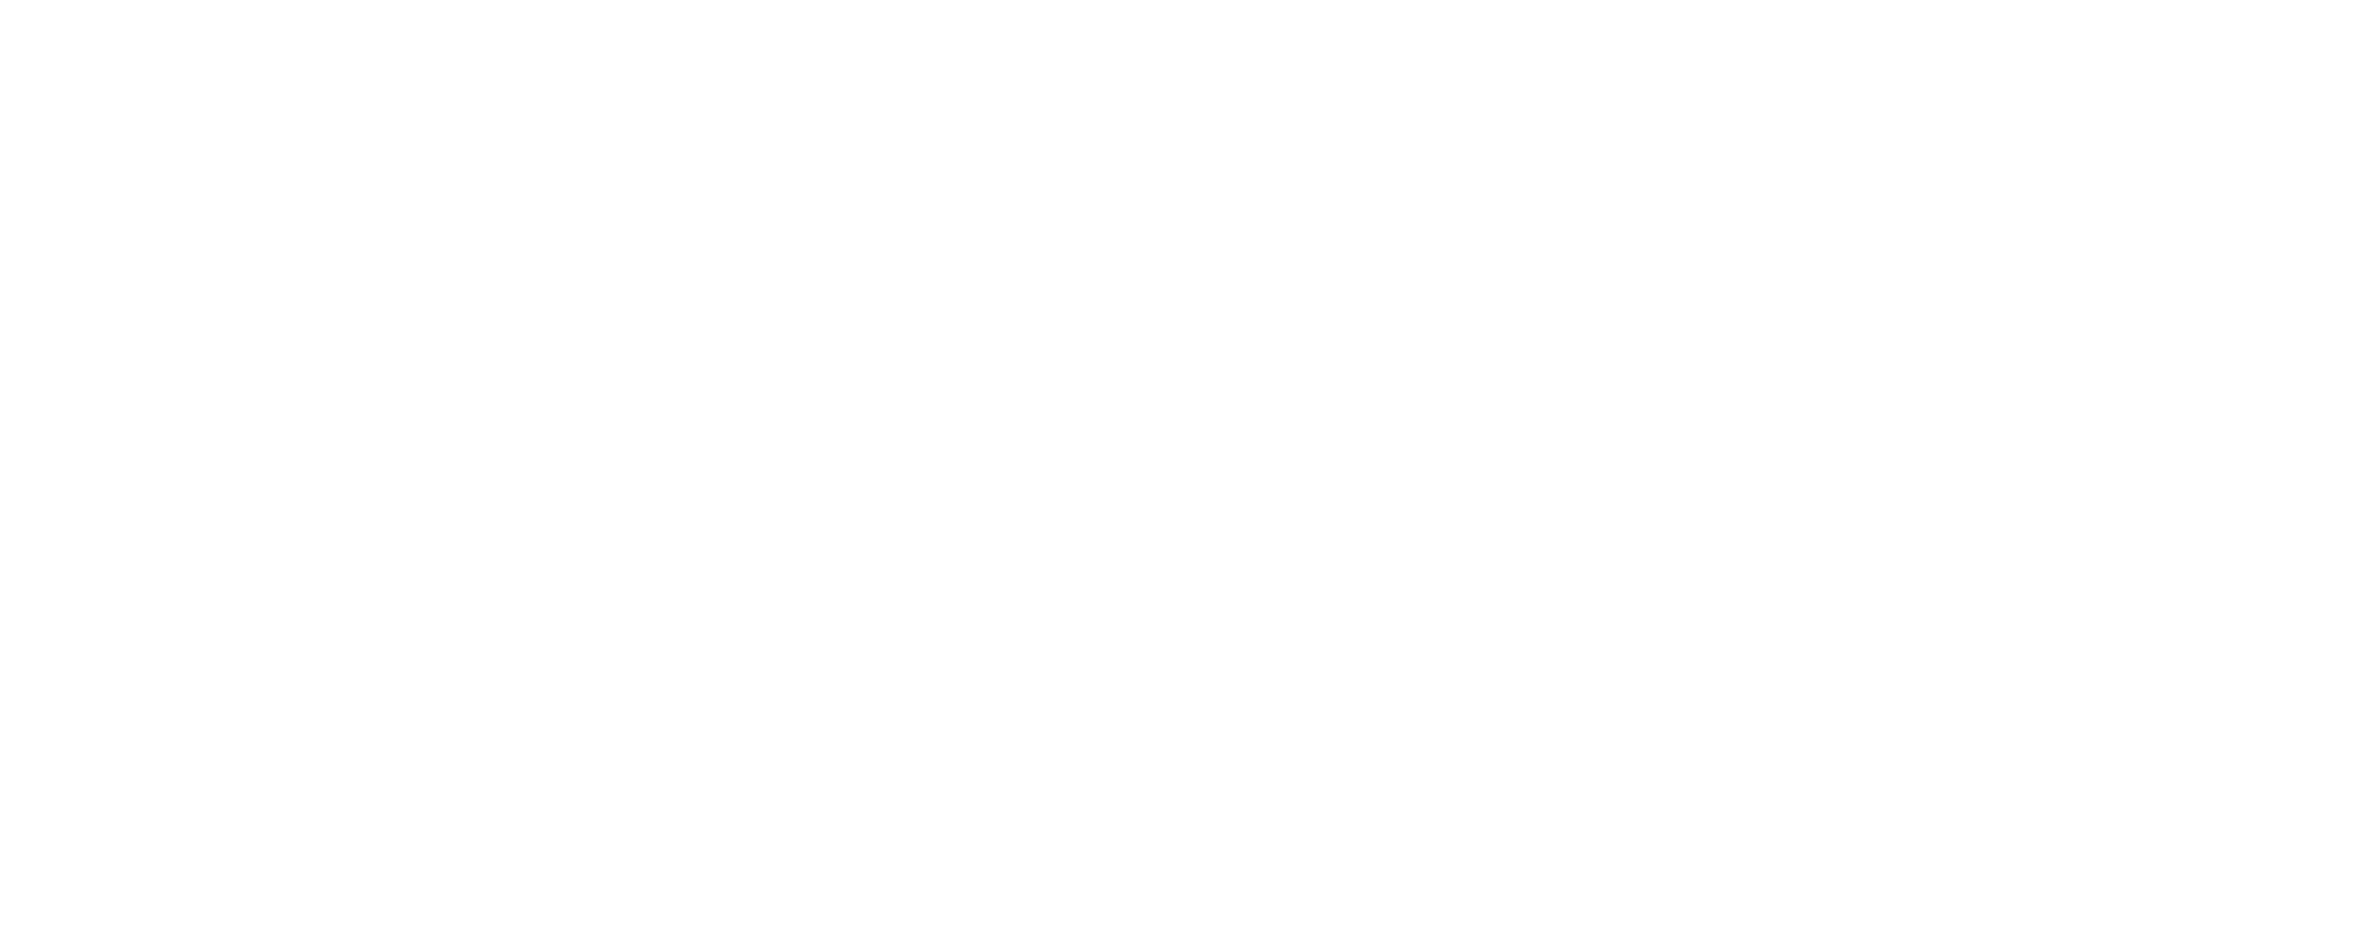 Mattress Makers USA